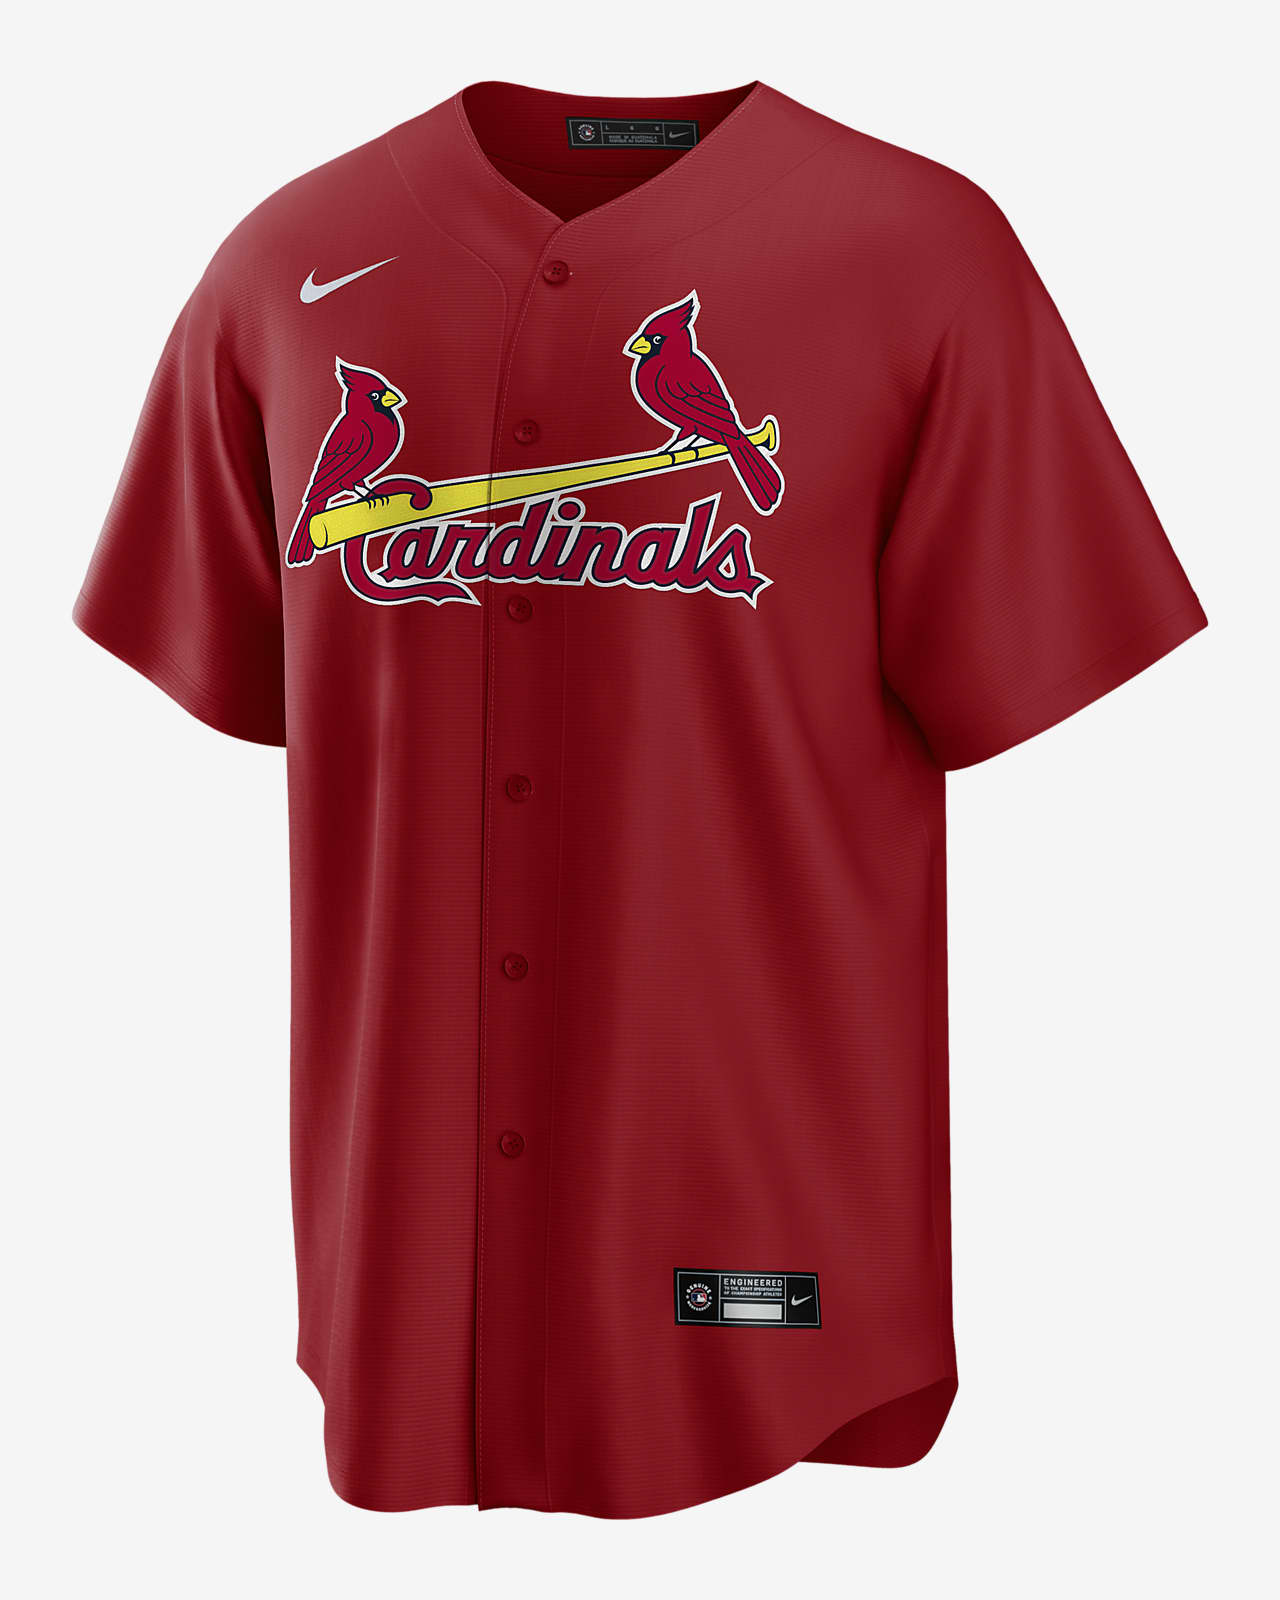 cardinals jersey nike